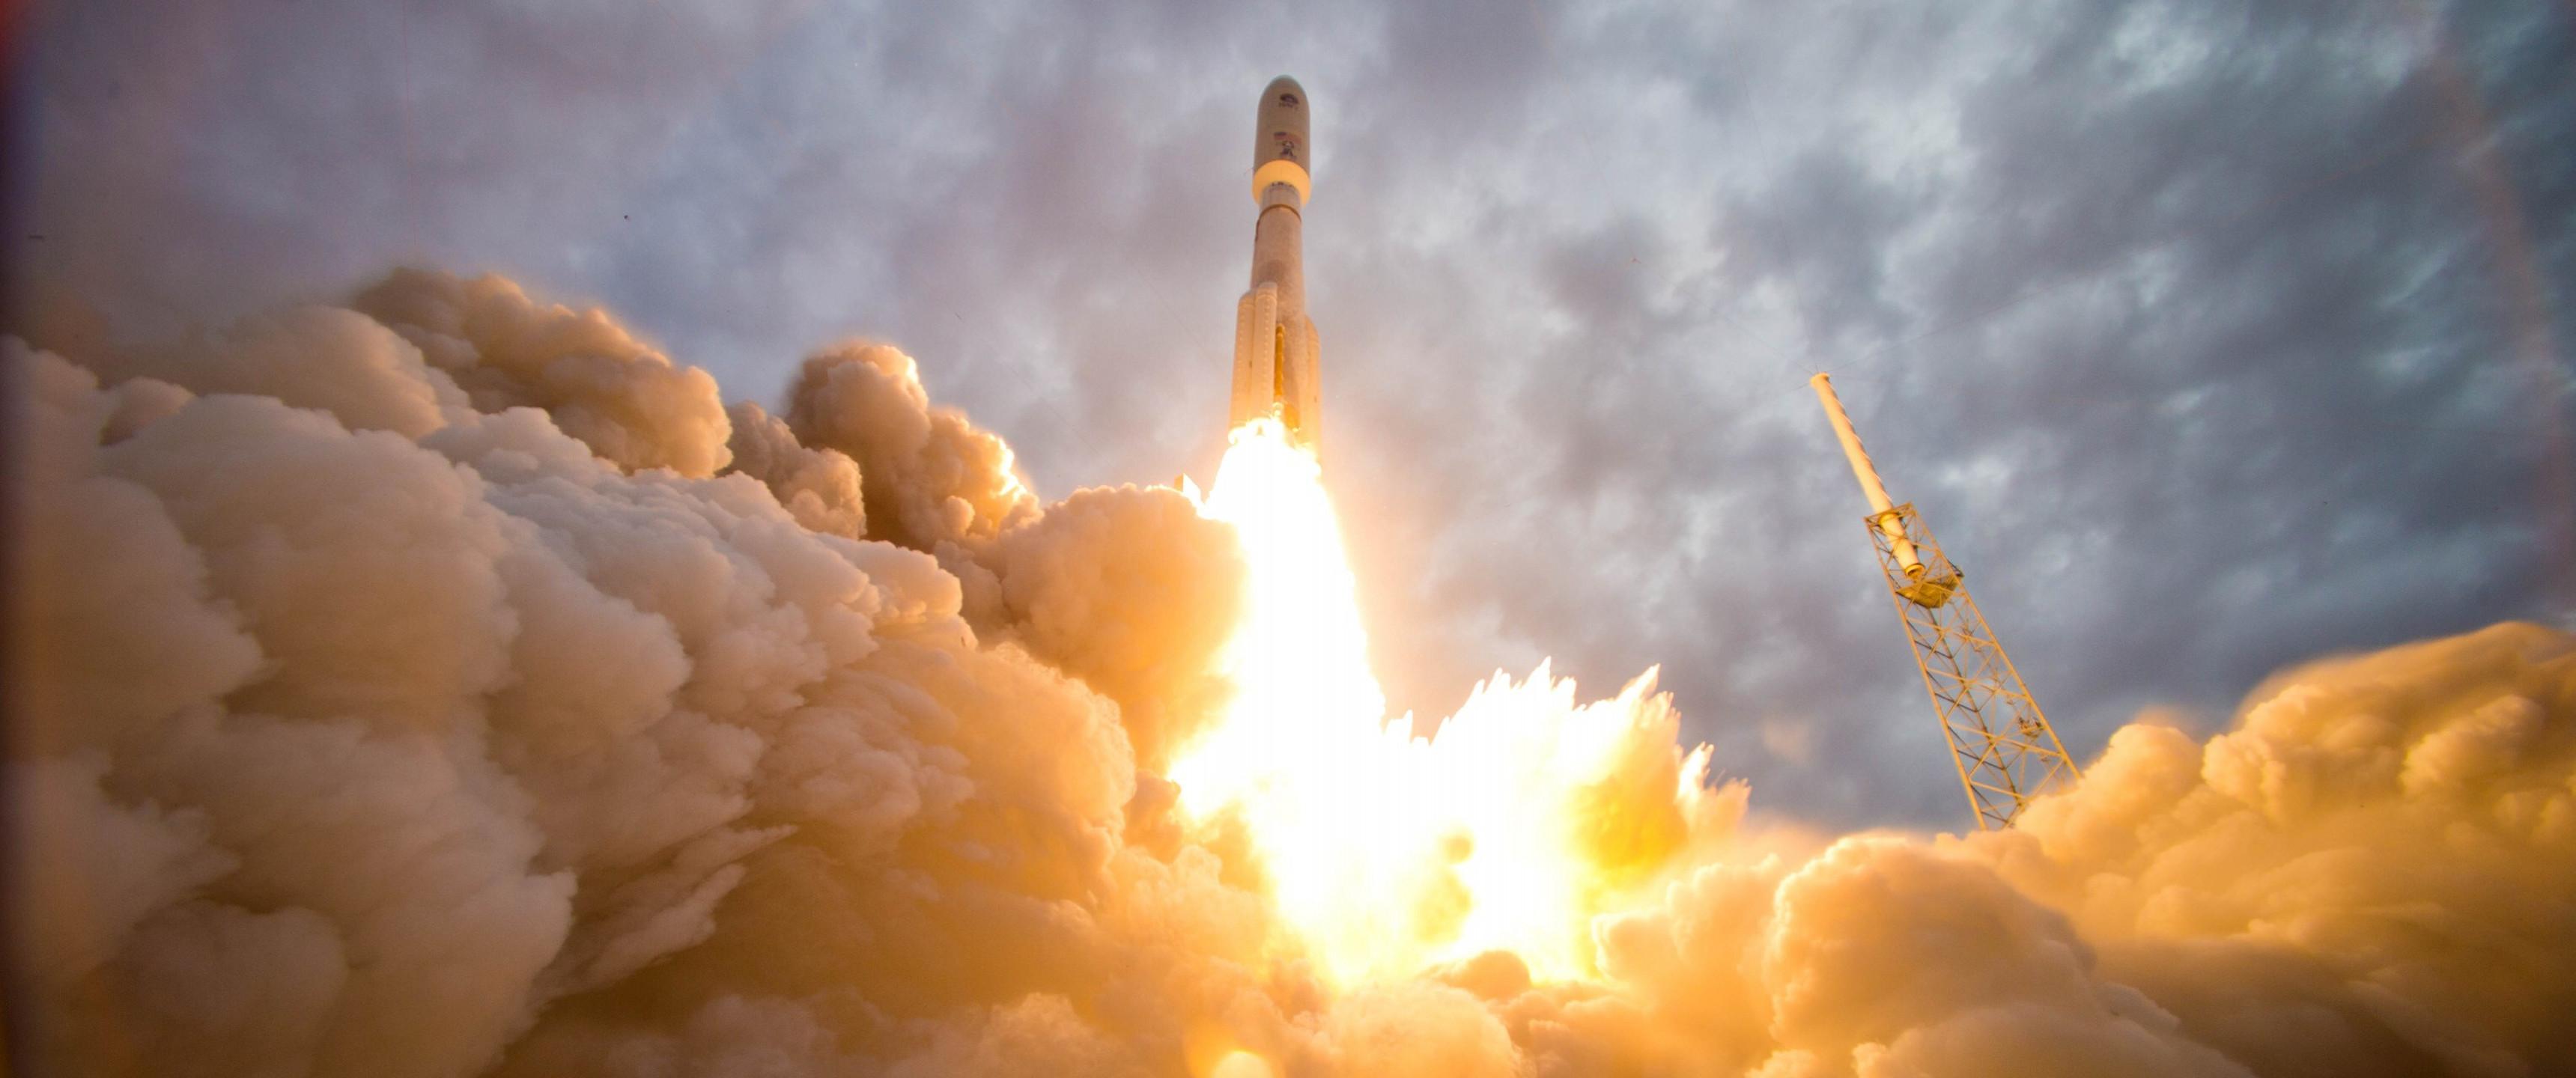 Nasa: rocket launch [3440x1440]